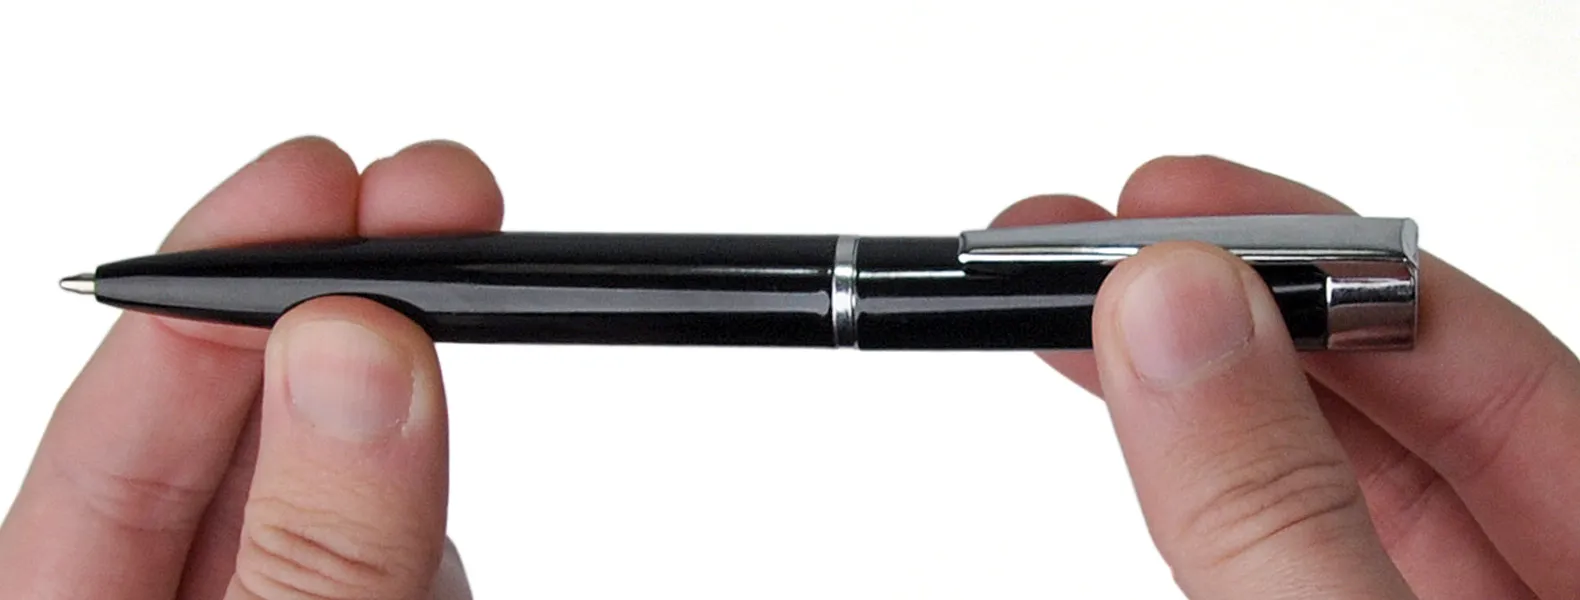 Caneta confeccionada em alumínio preto com detalhes cromado. Carga esferográfica azul, acionada com um giro no corpo da caneta.